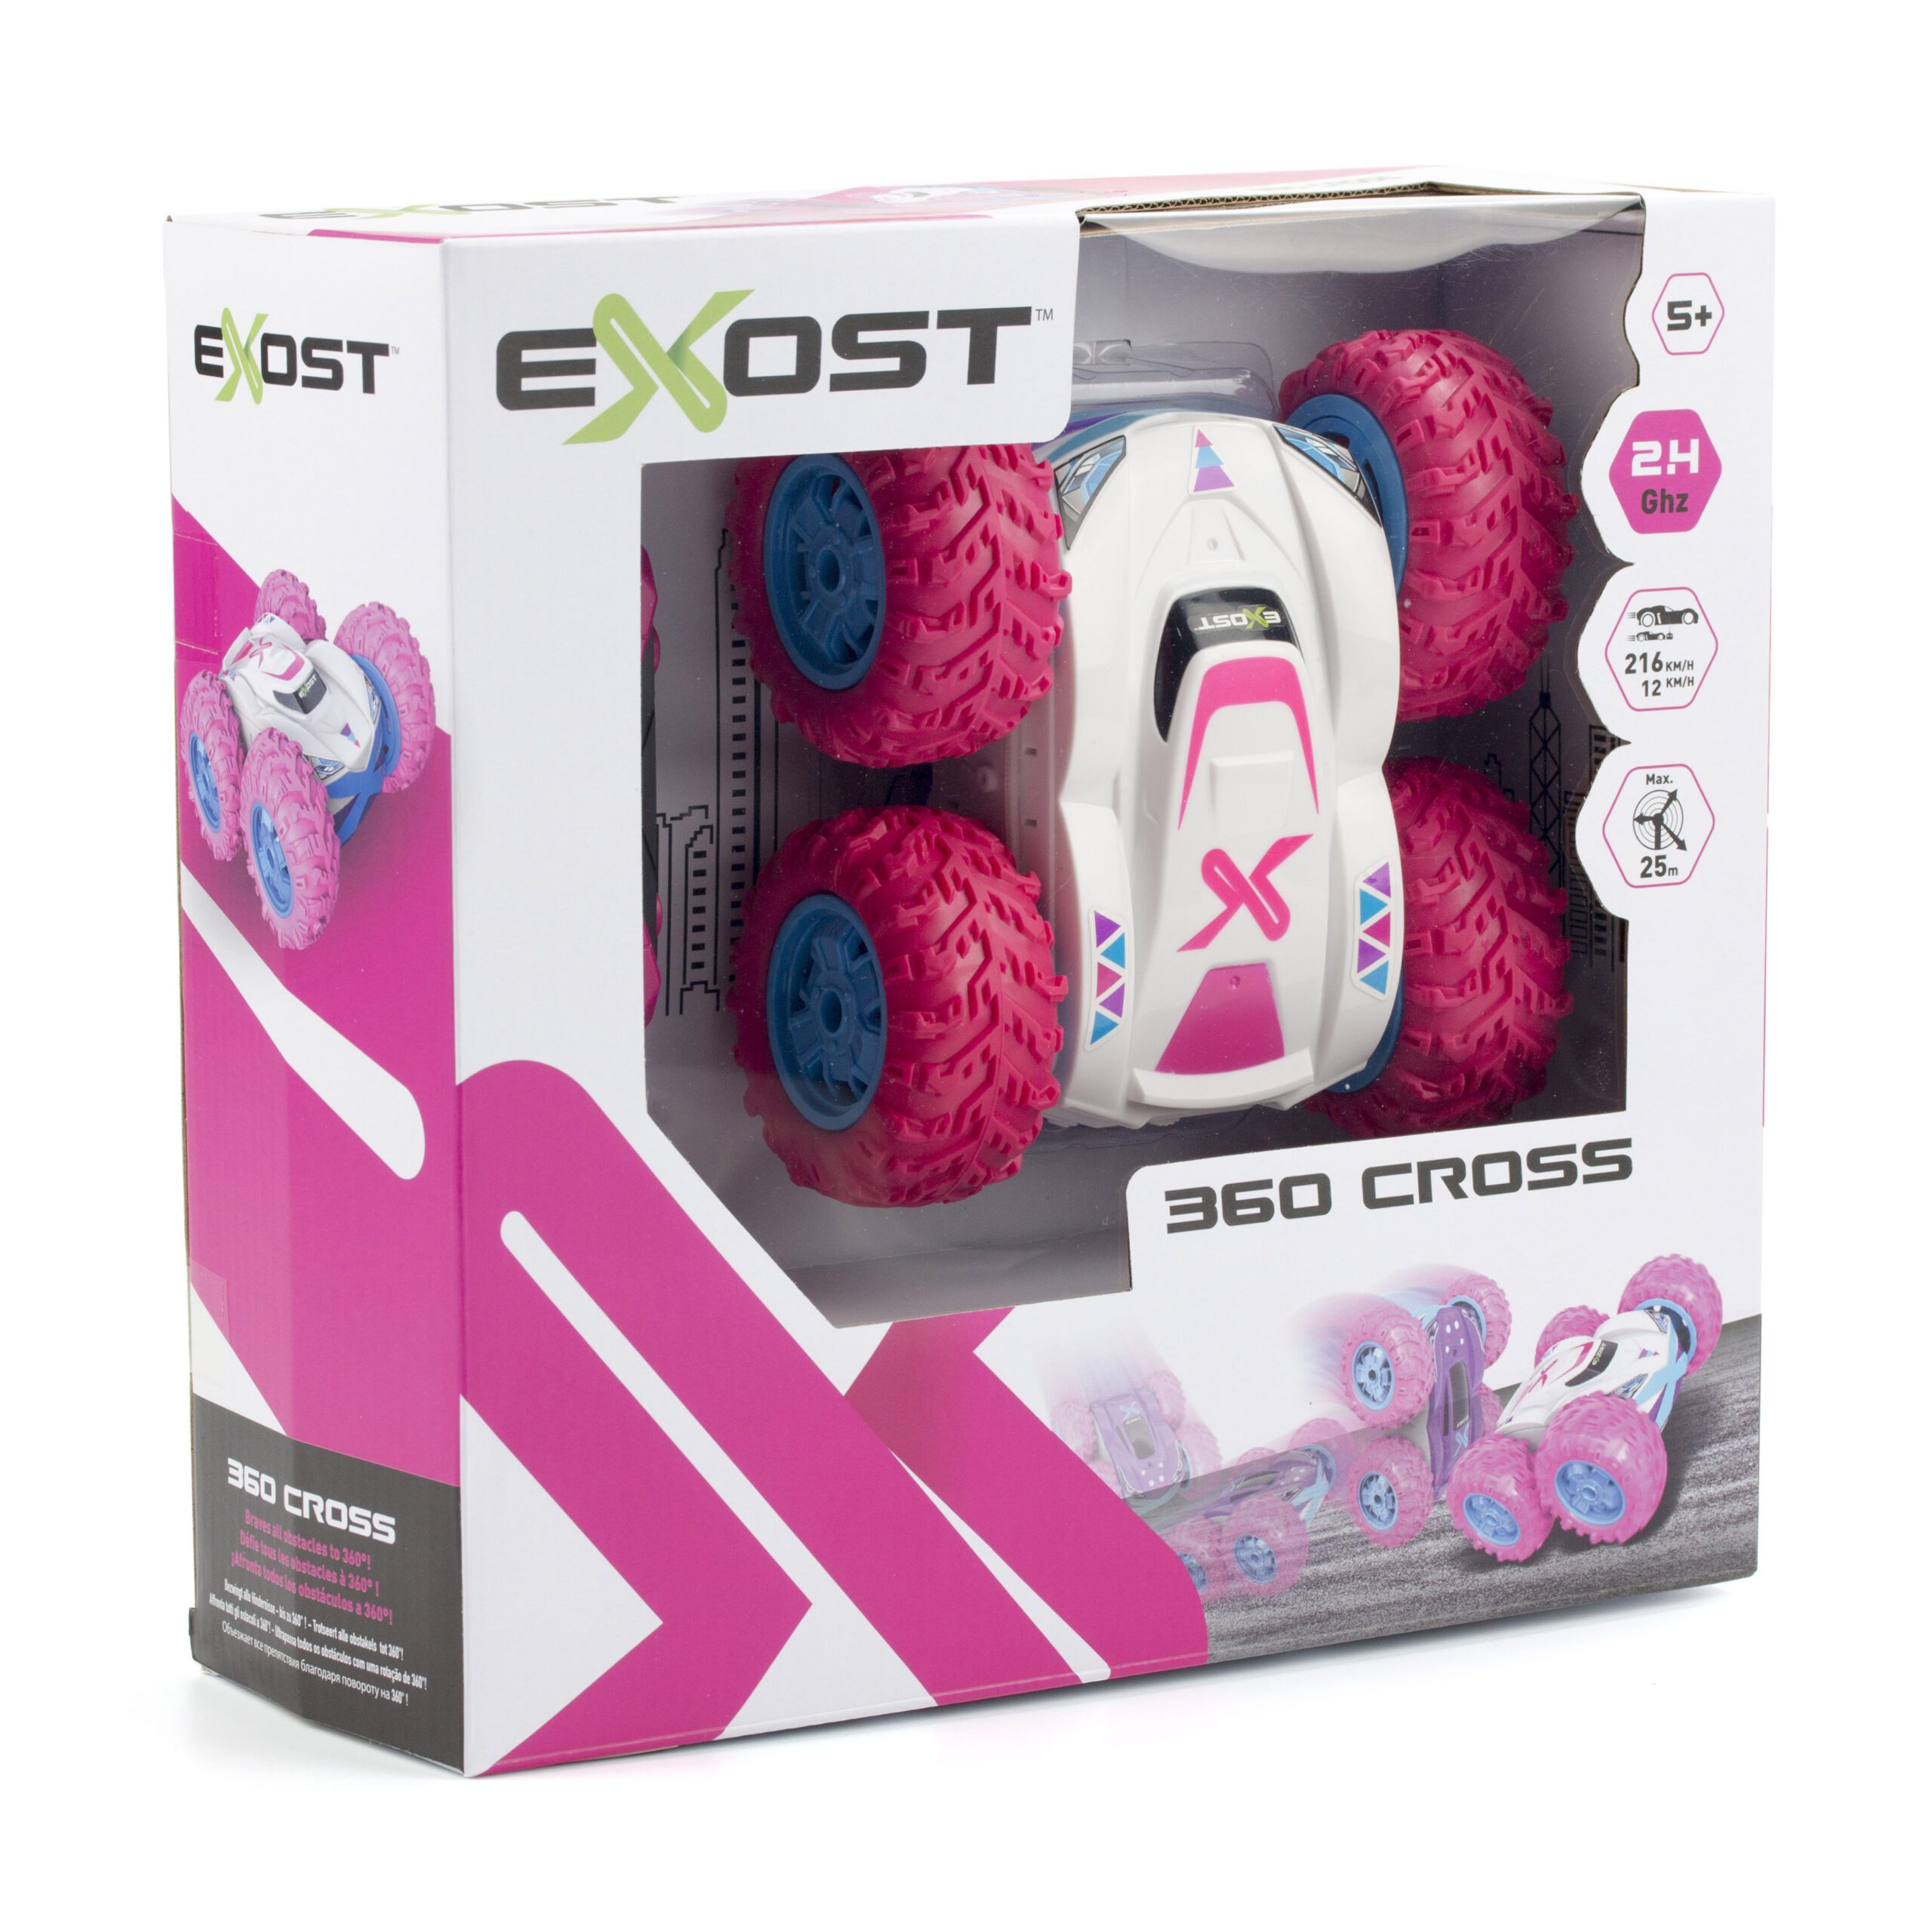 EXOST 360 Cross rosa – Silverlit